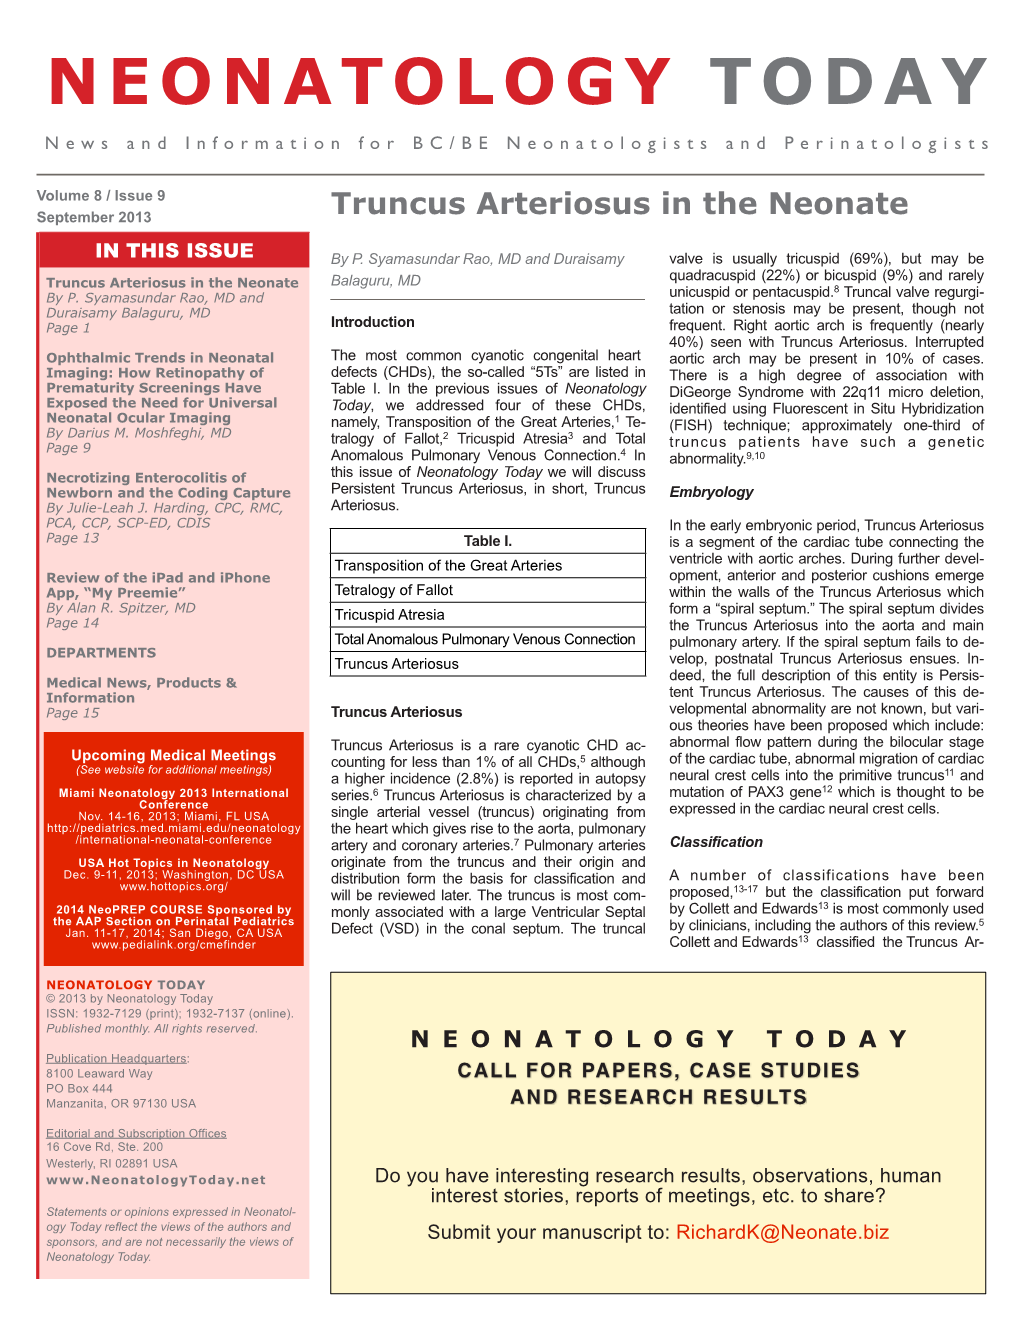 Truncus Arteriosus in the Neonate